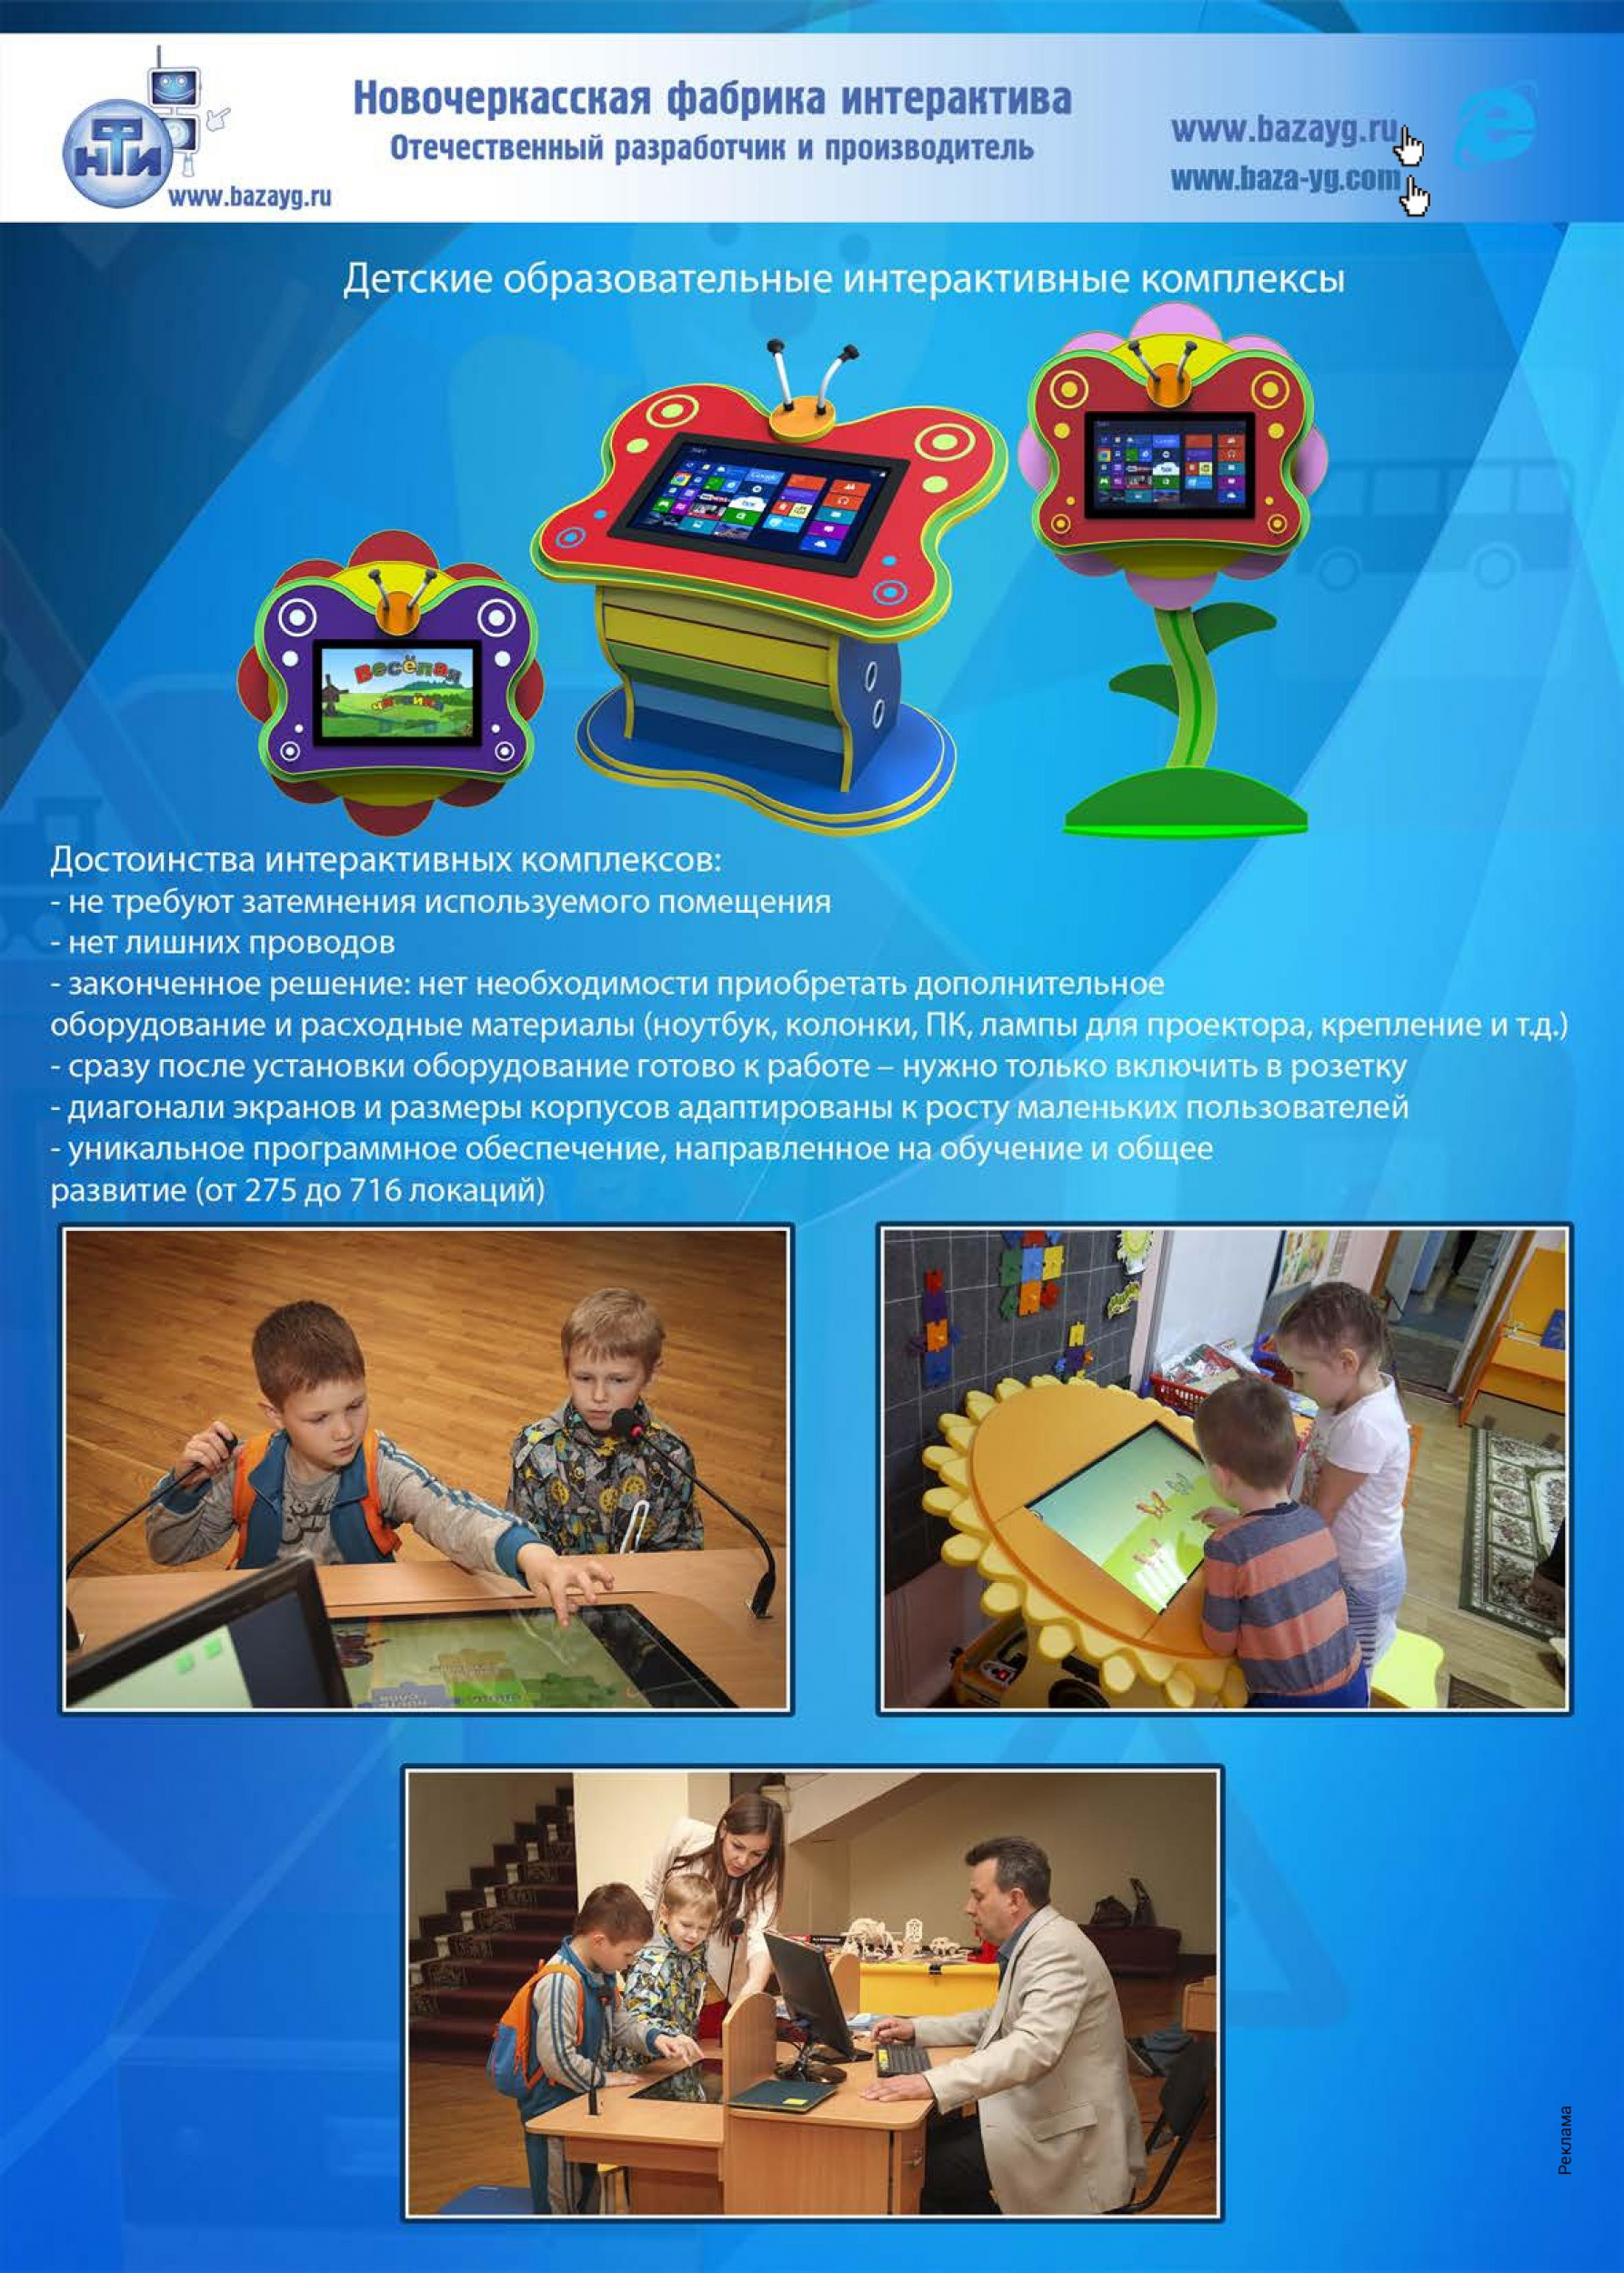 Детские образовательные интерактивные комплексы